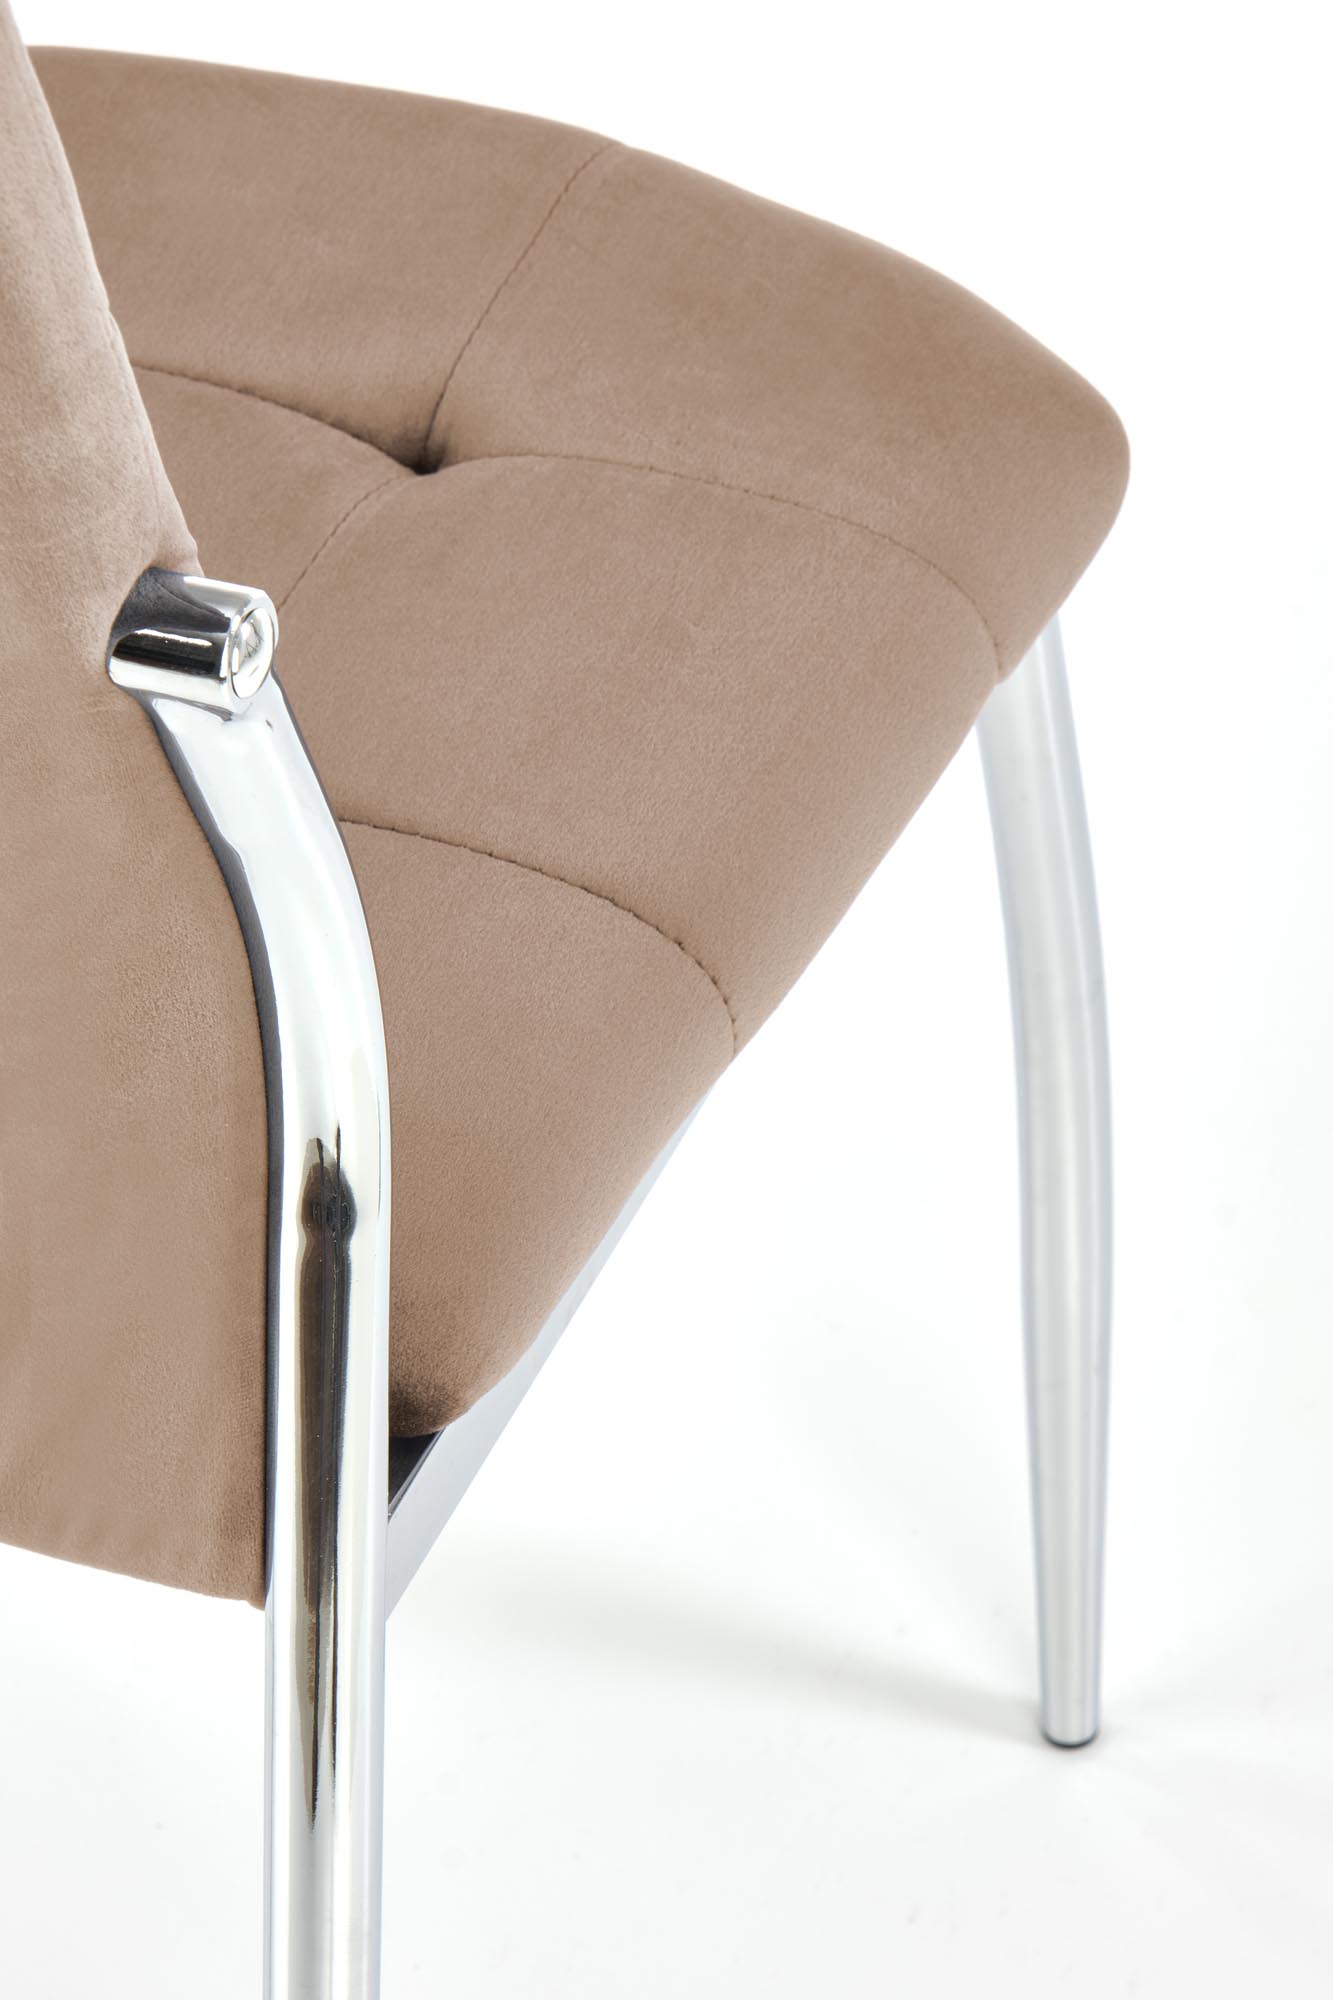 Scaun bej K416 tapițat - catifea  Židle čalouněné k416 - béžový velvet